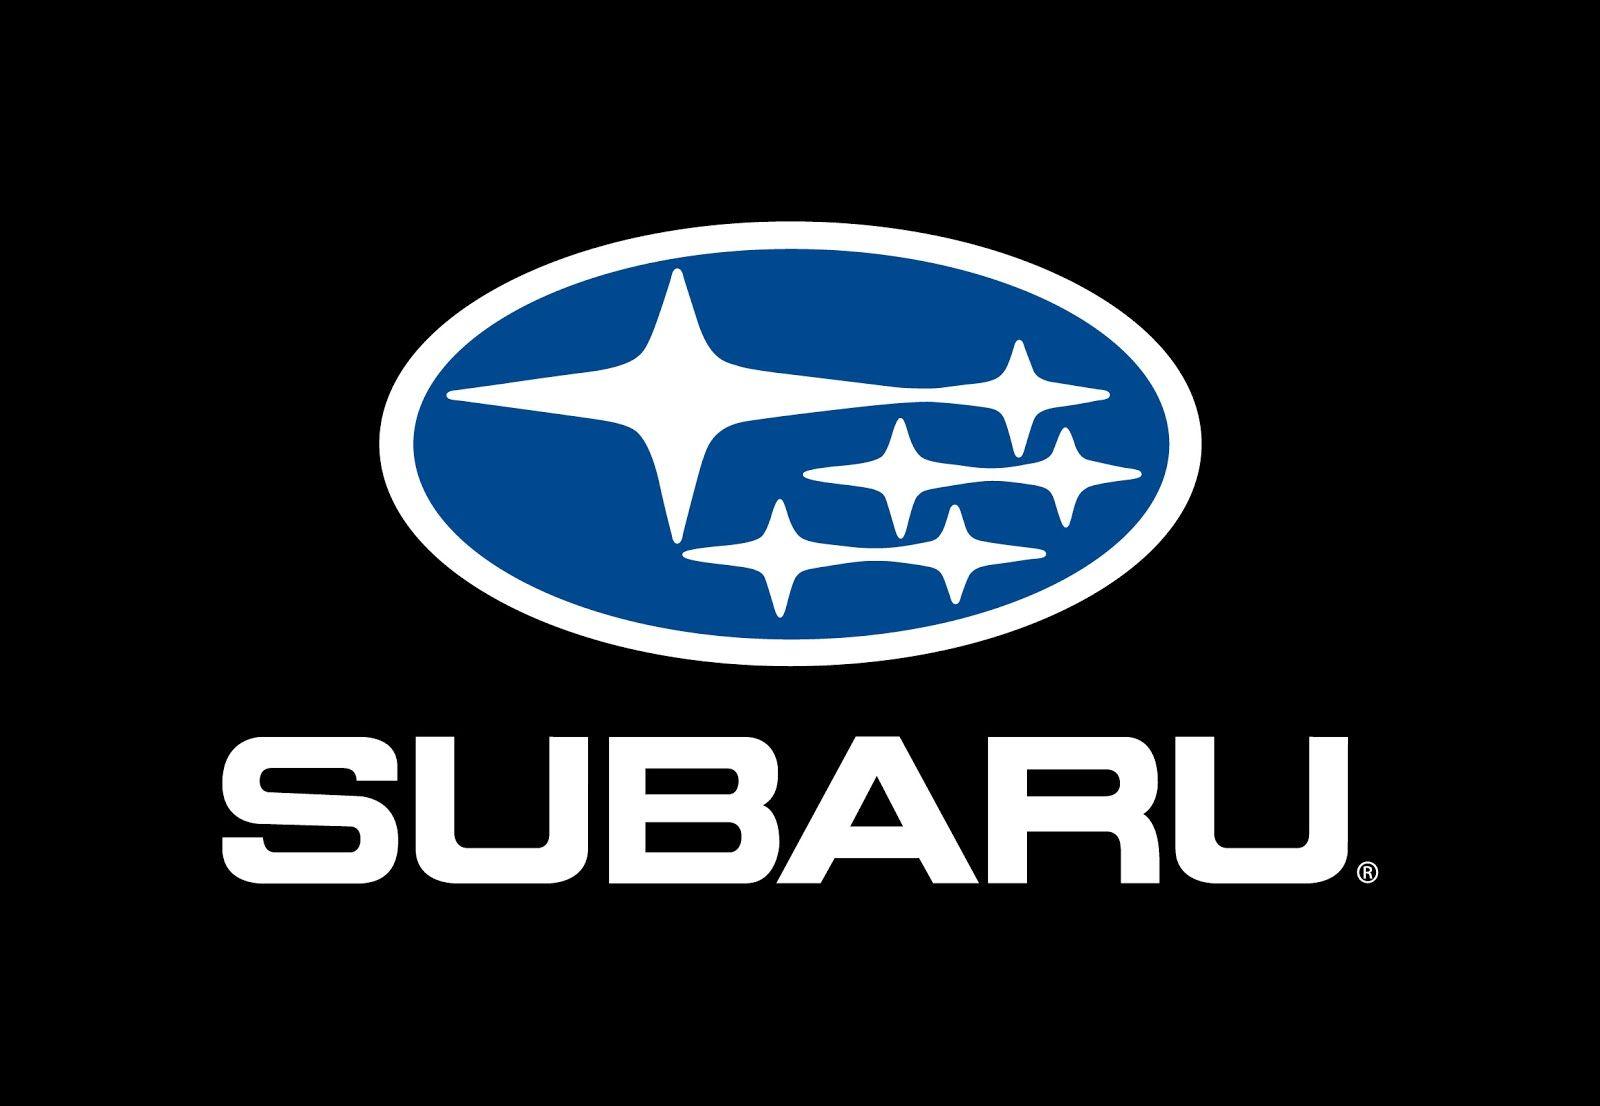 Black and Blue Company Logo - Subaru Logo, Subaru Car Symbol Meaning and History | Car Brand Names.com